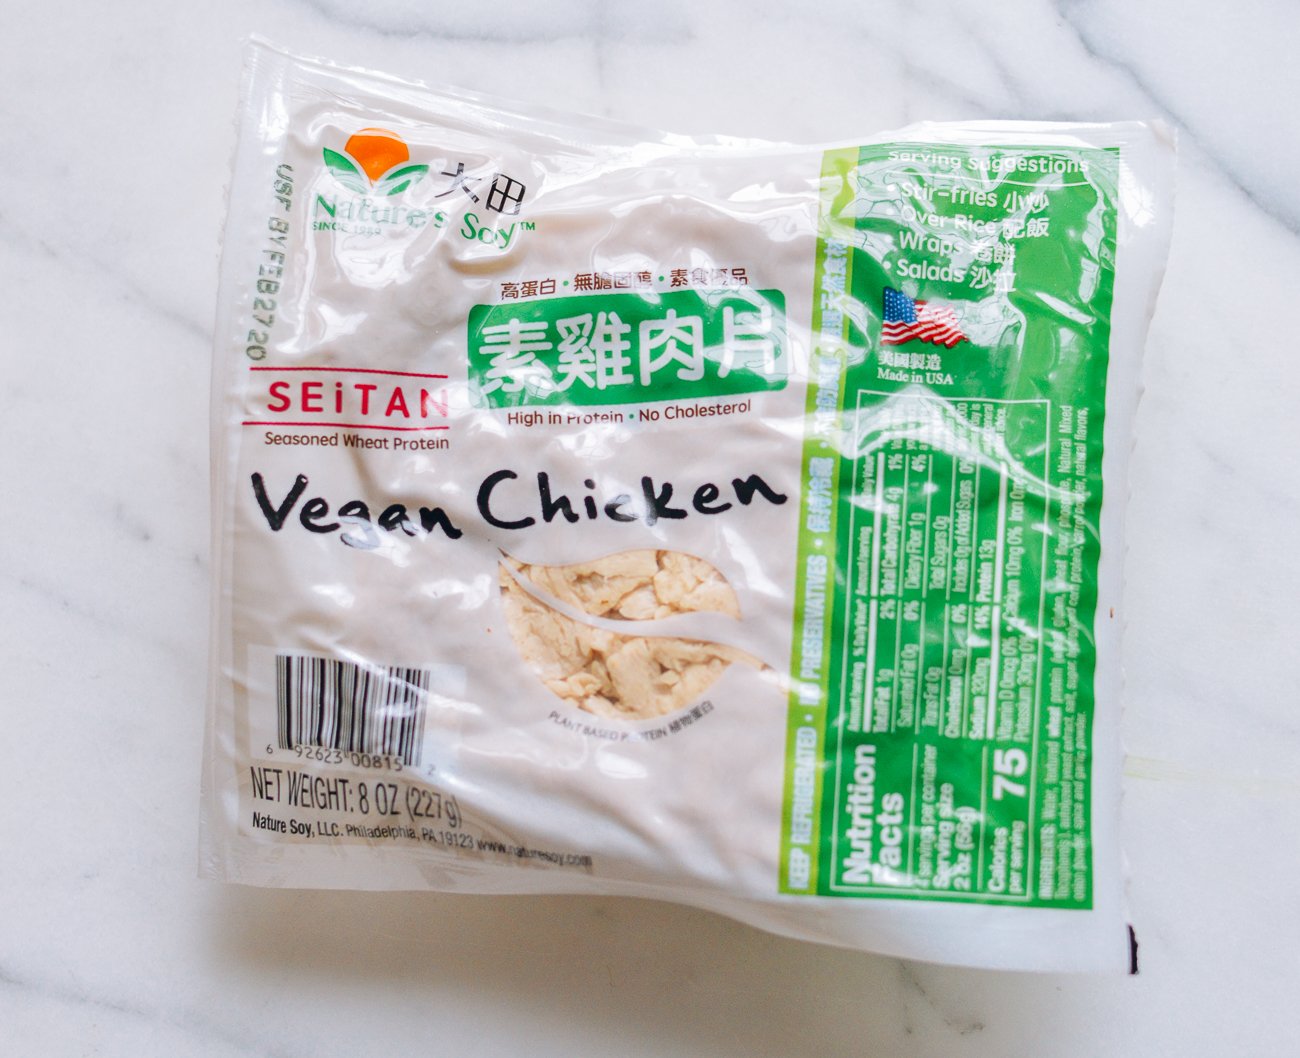 package of seitan vegan chicken